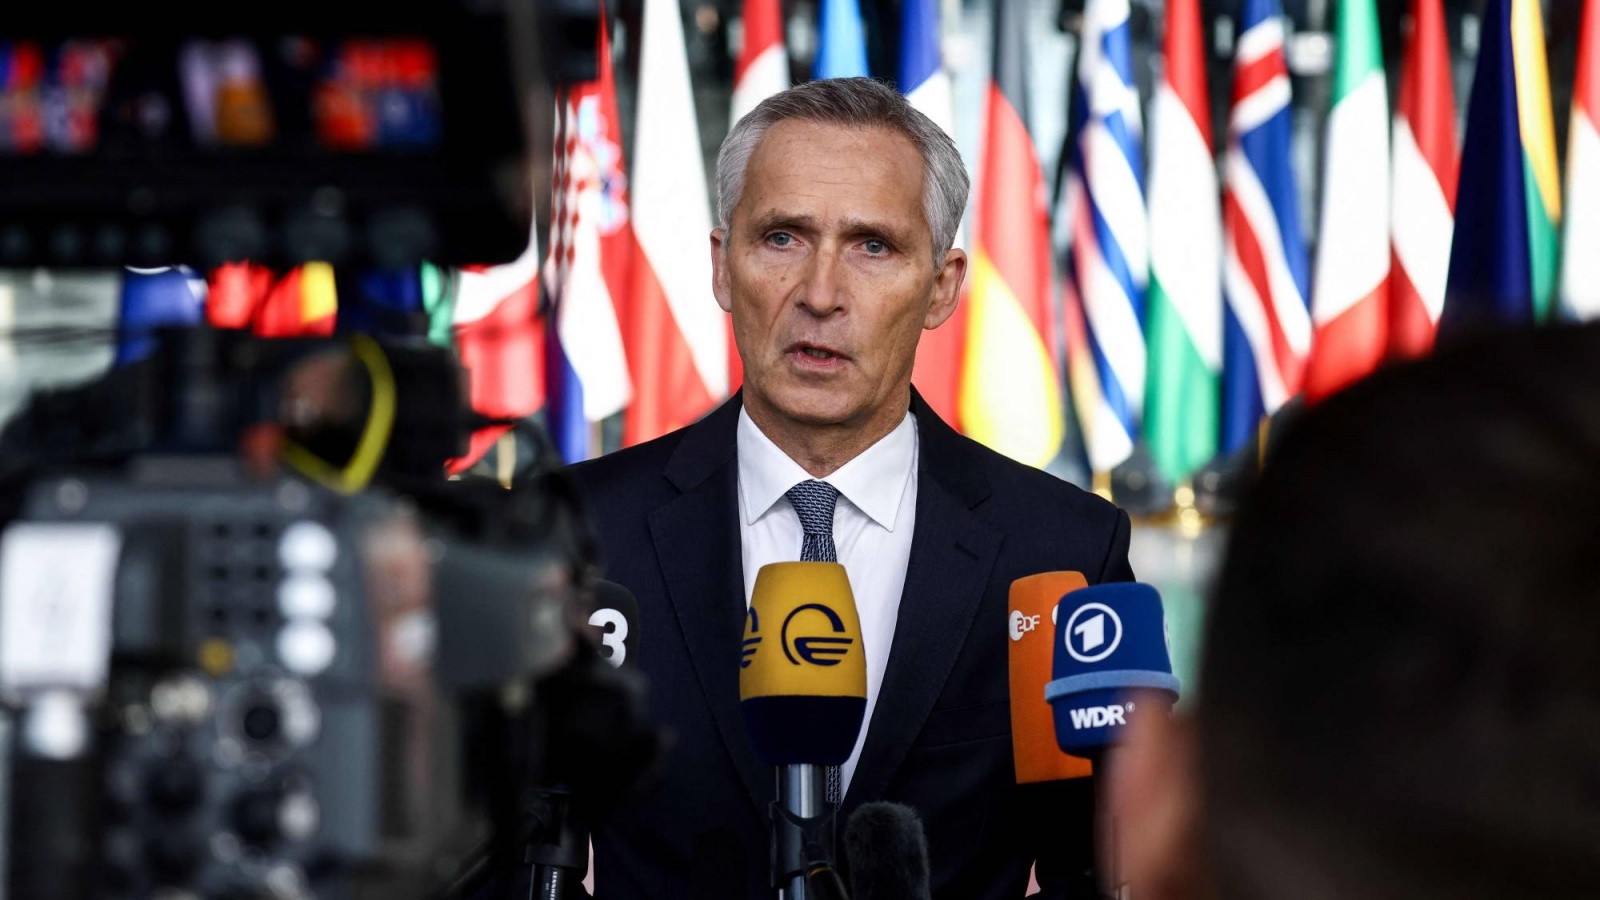 الأمين العام لحلف الناتو ينس ستولتنبرغ يتحدث إلى الصحفيين أثناء وصوله لحضور اجتماع لمدة يومين لوزراء دفاع الحلف في مقر الناتو في بروكسل.